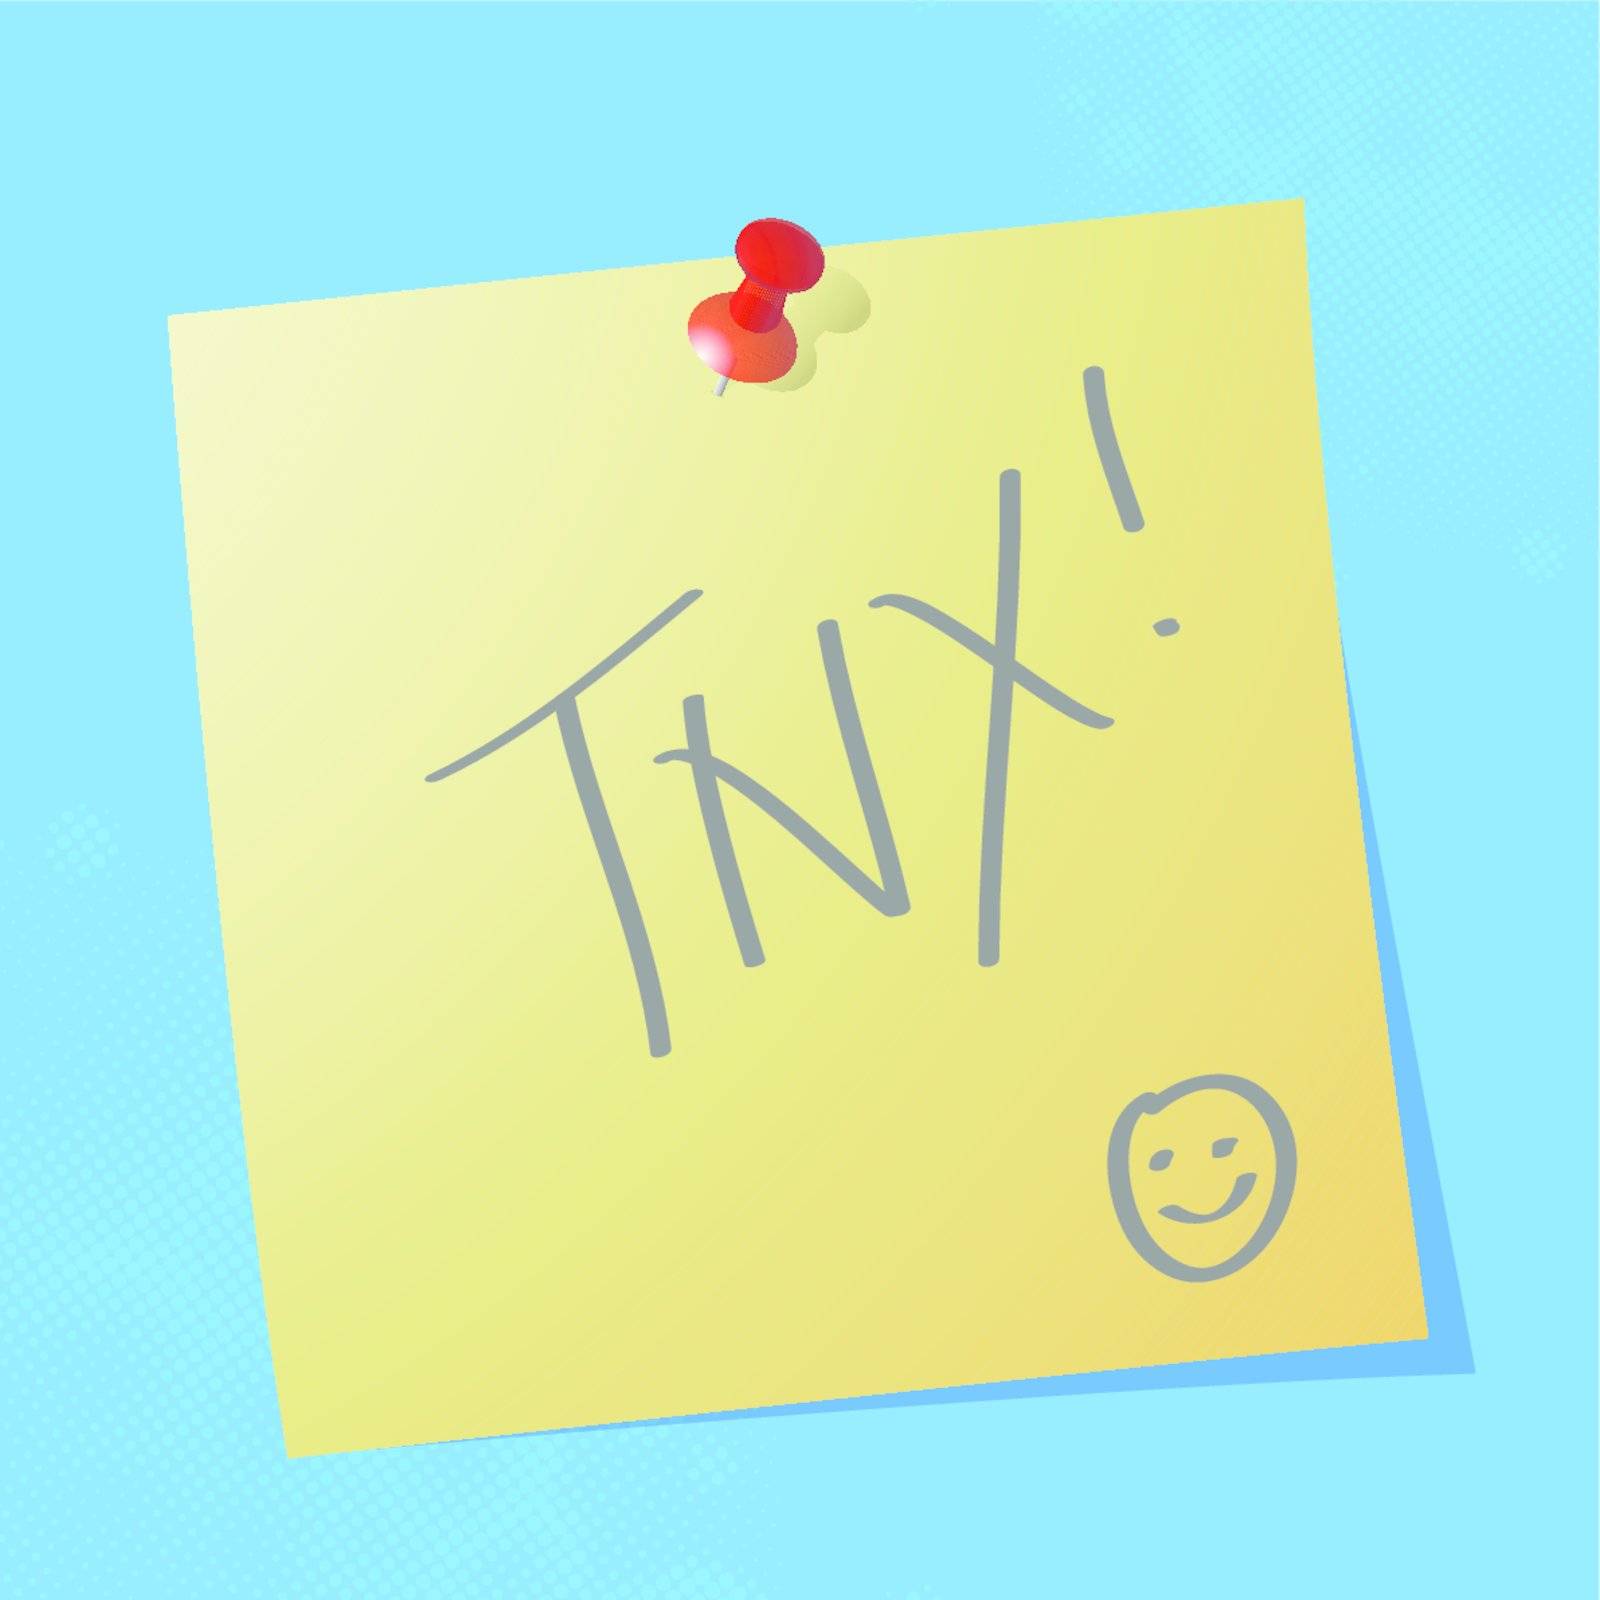 "tnx" handwritten message by milinz